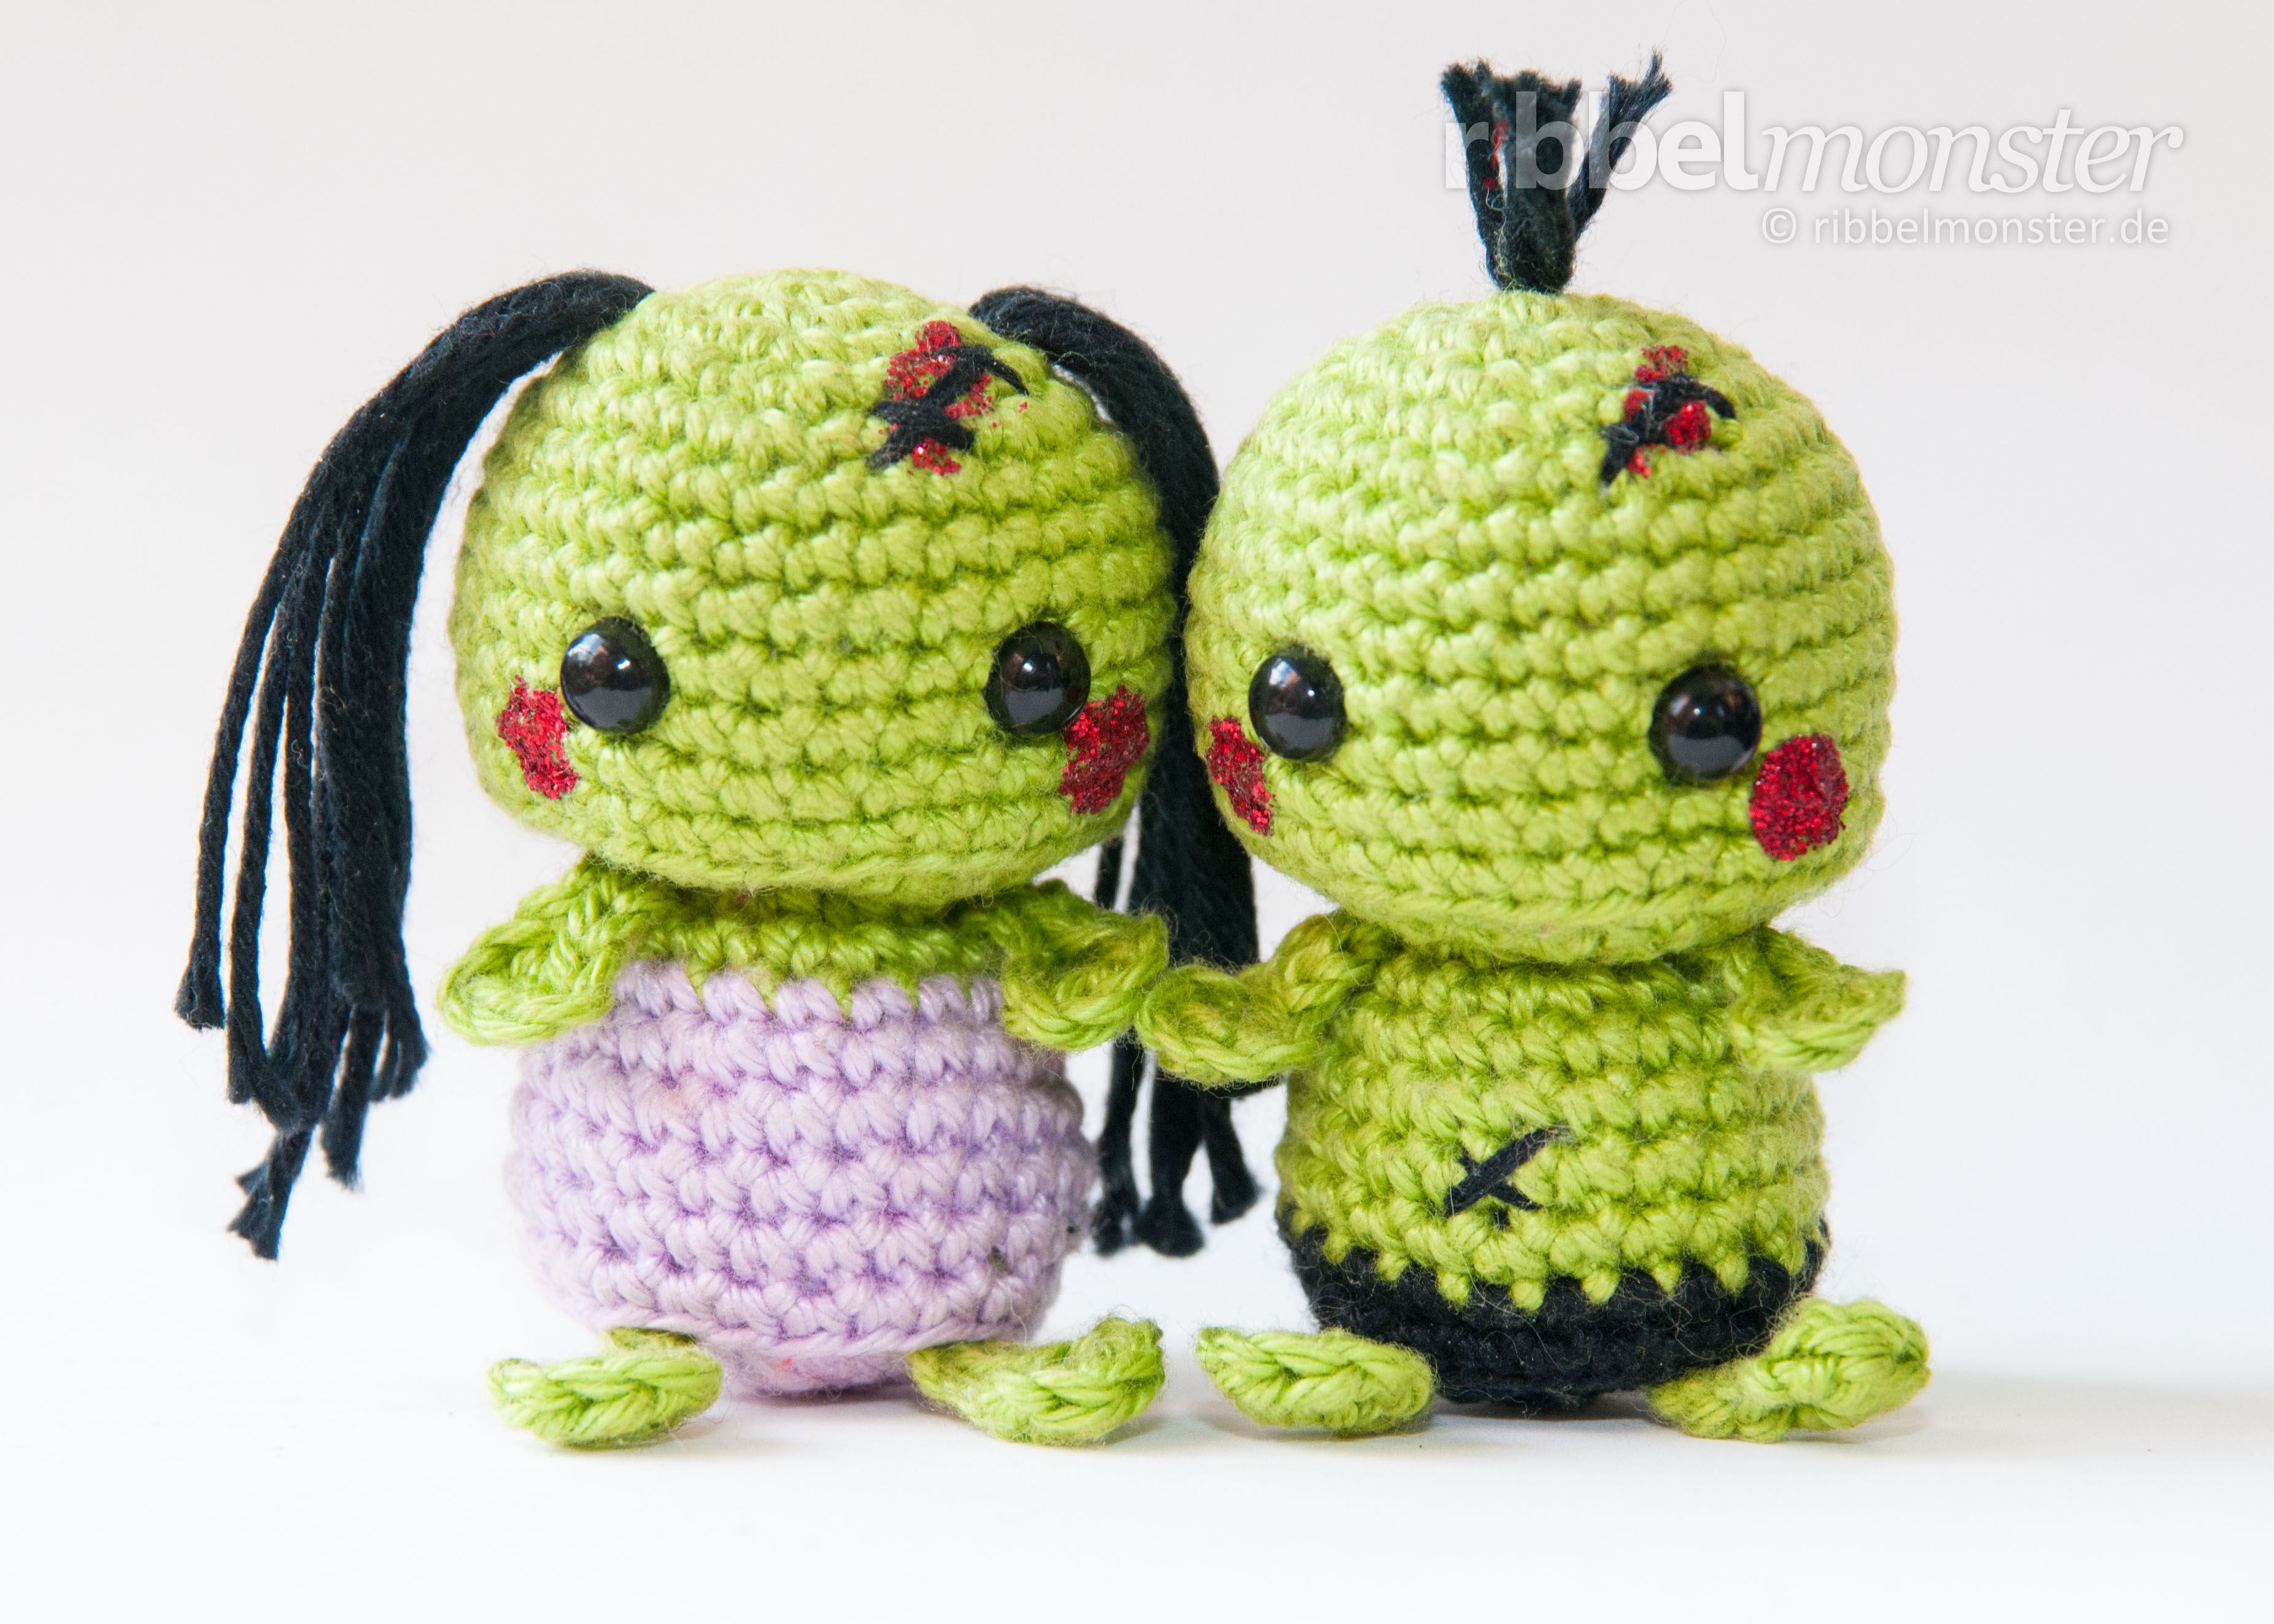 Amigurumi - Minimee Zombies häkeln - free crochet pattern - pattern